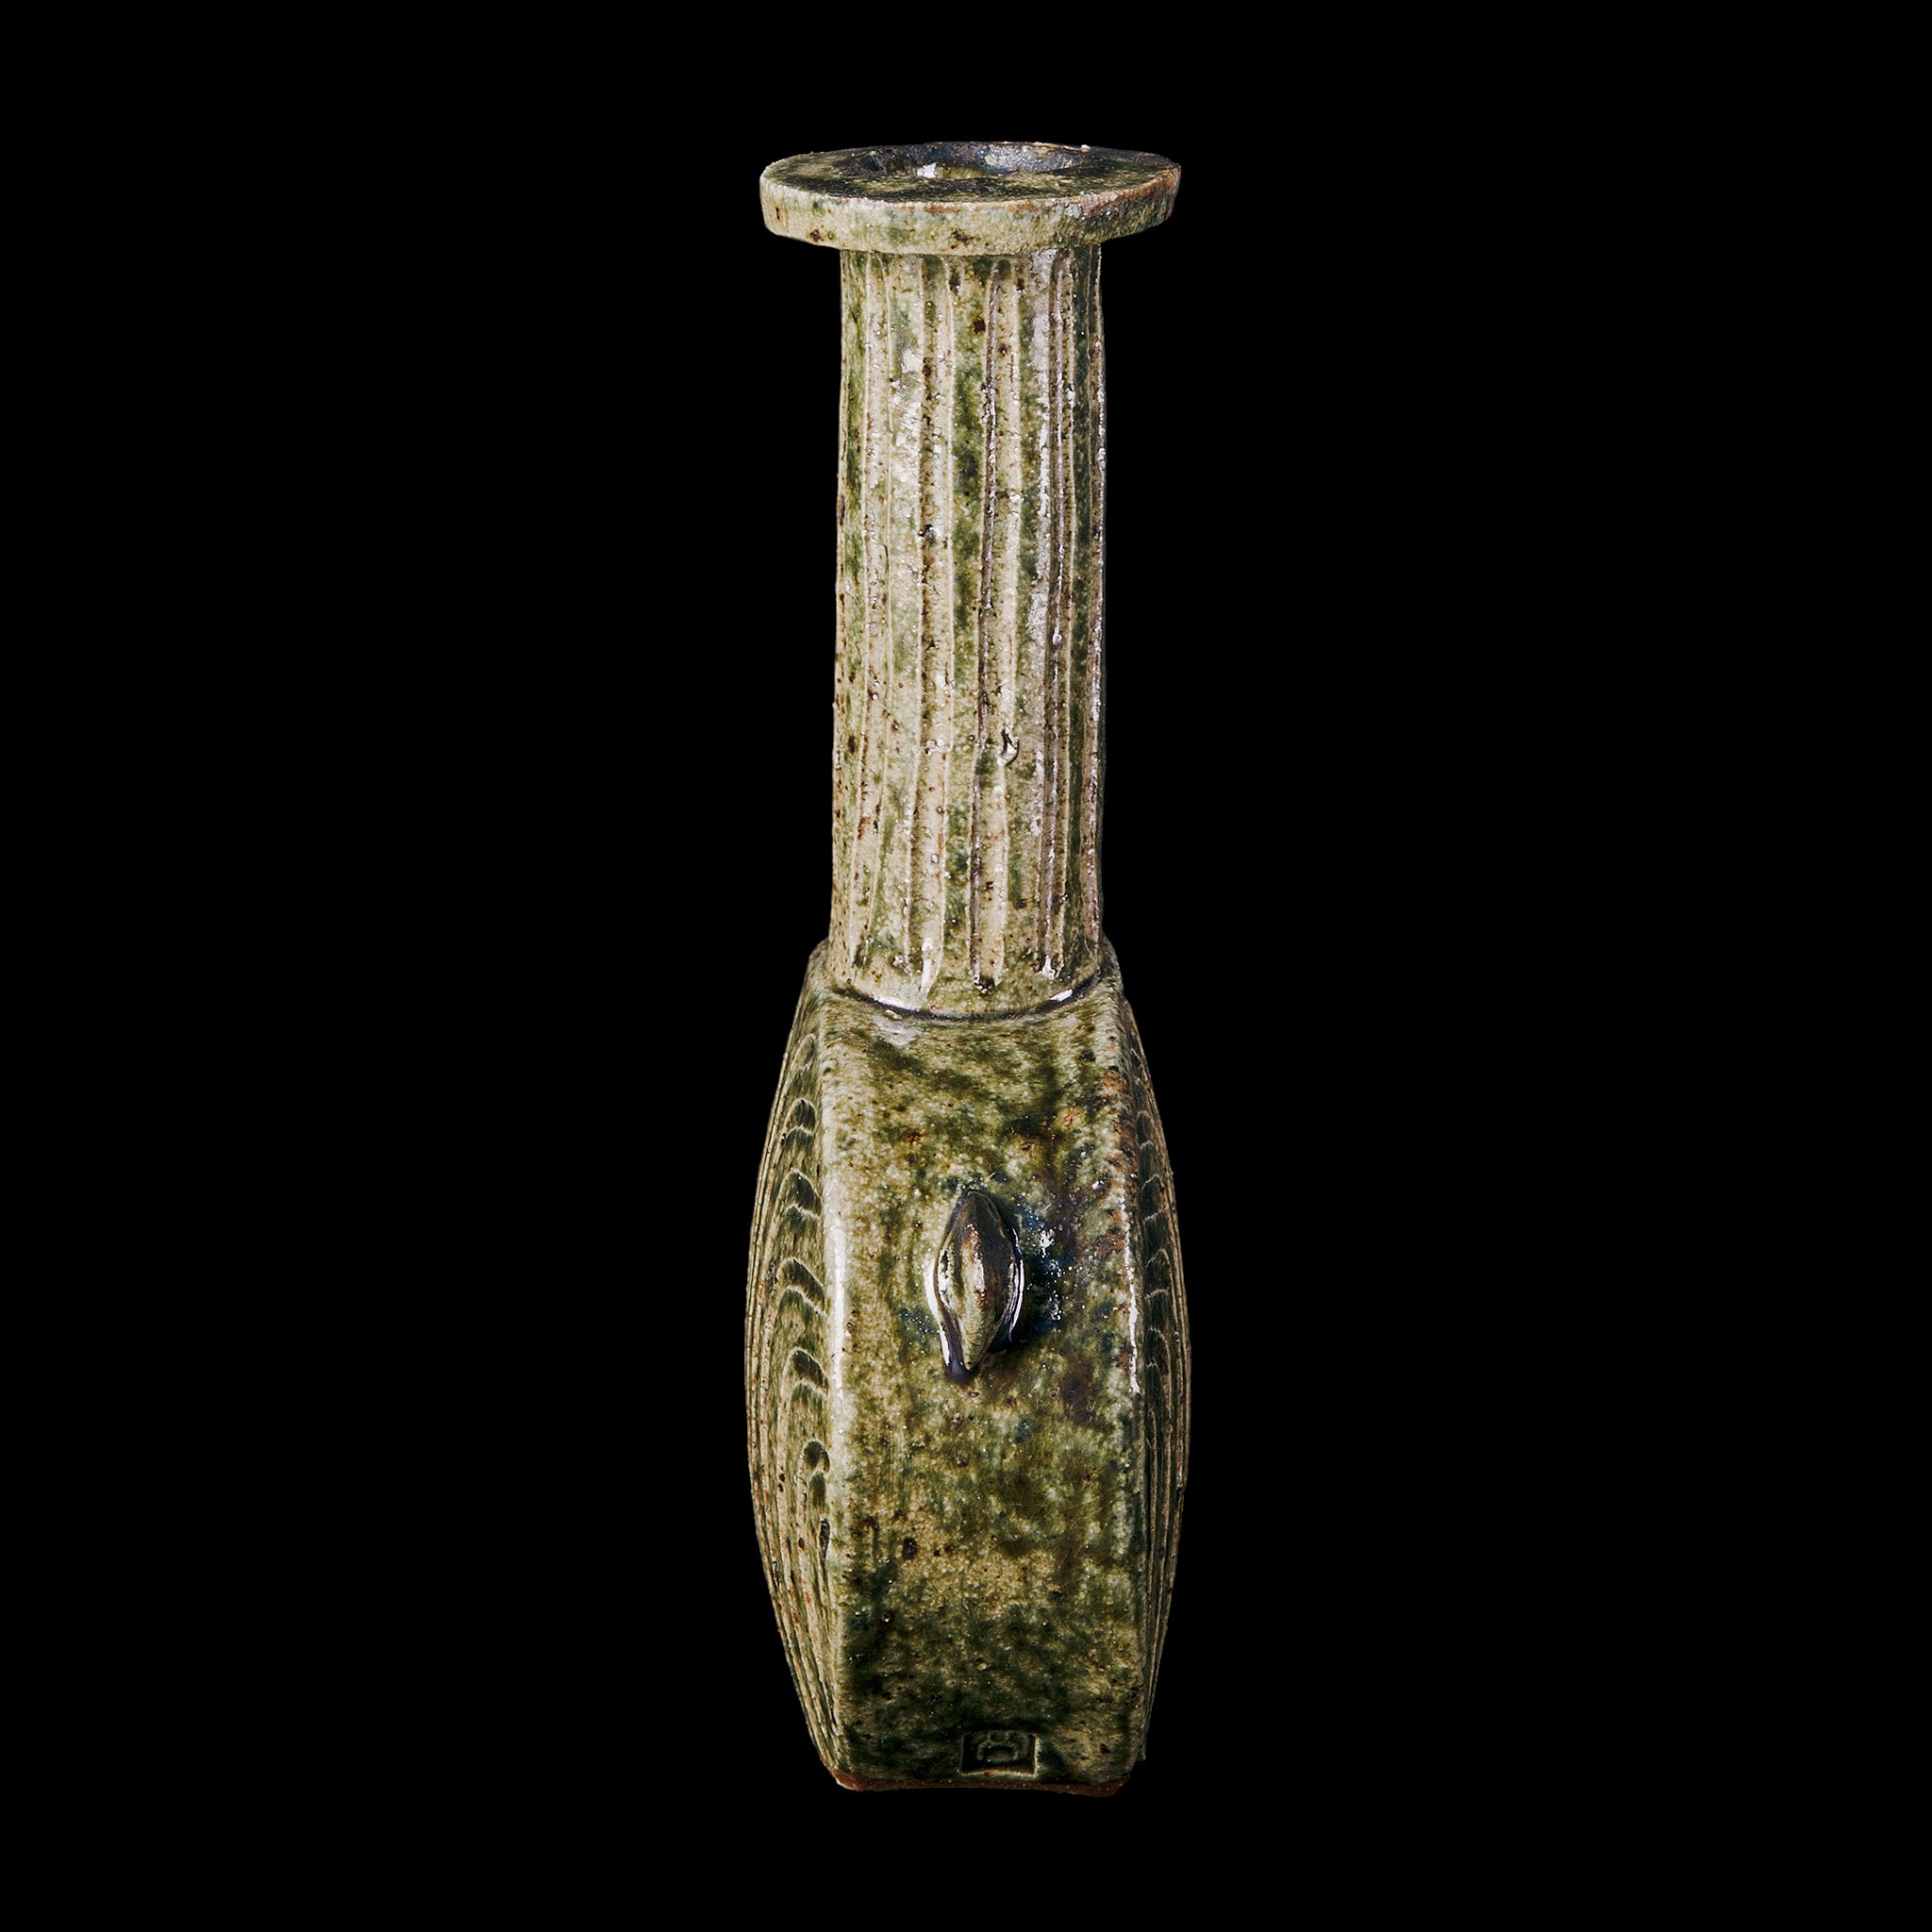 Vase No.144/22